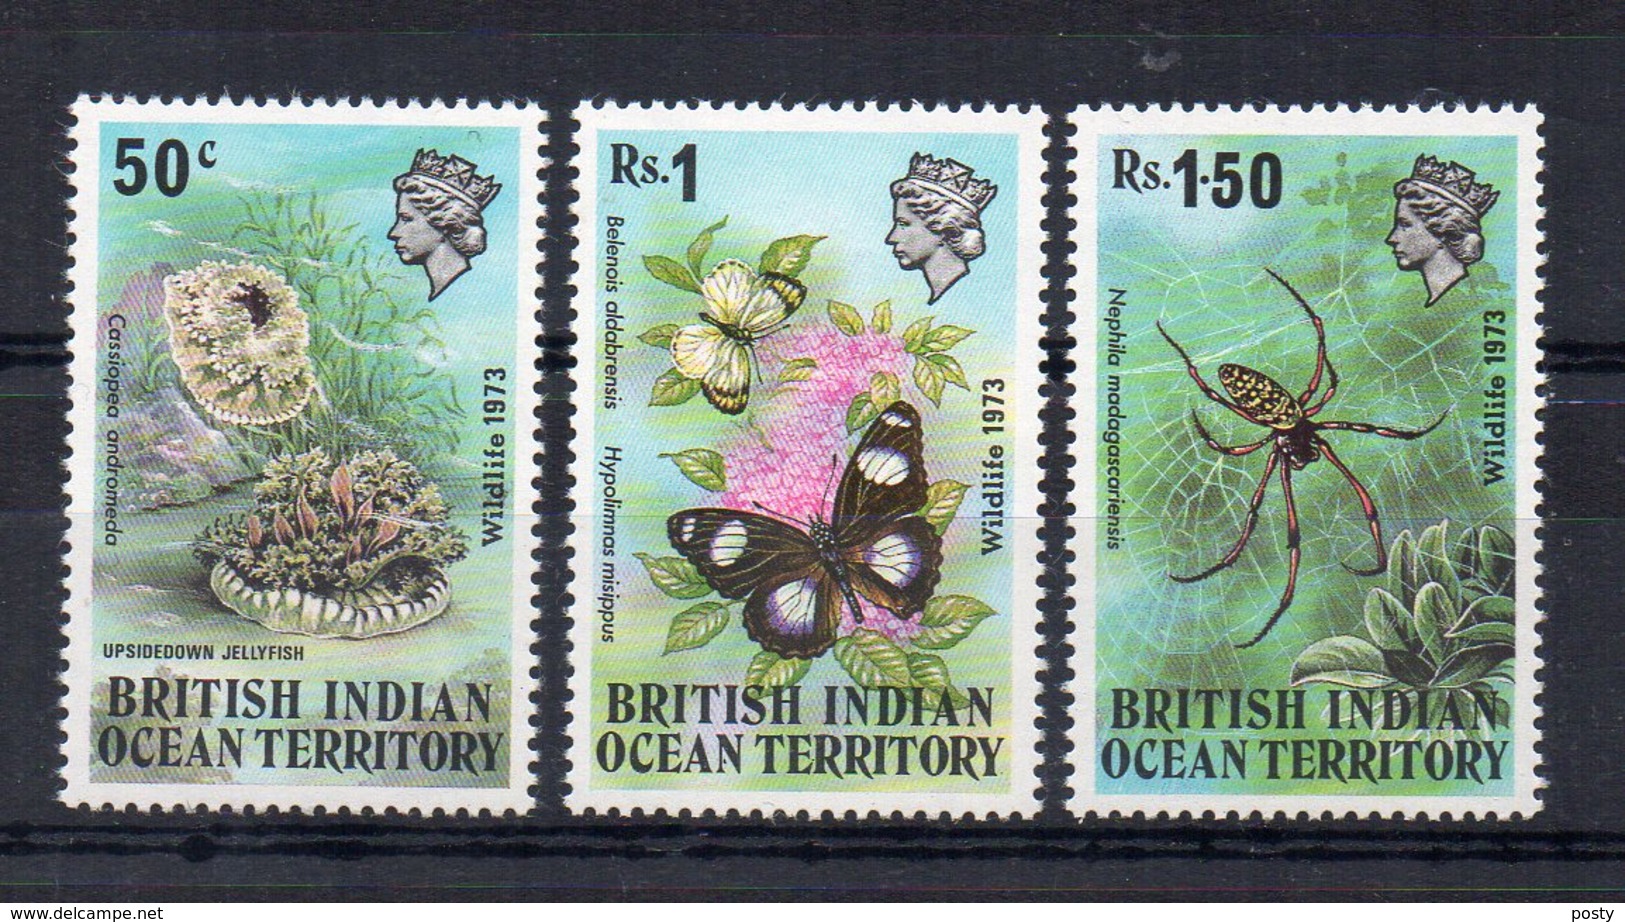 TERRITOIRE BRITANNIQUE DE L'OCEAN INDIEN - BRITISH INDIAN OCEAN TERRITORY - 1973 - FAUNE - FAUNA - - Britisches Territorium Im Indischen Ozean